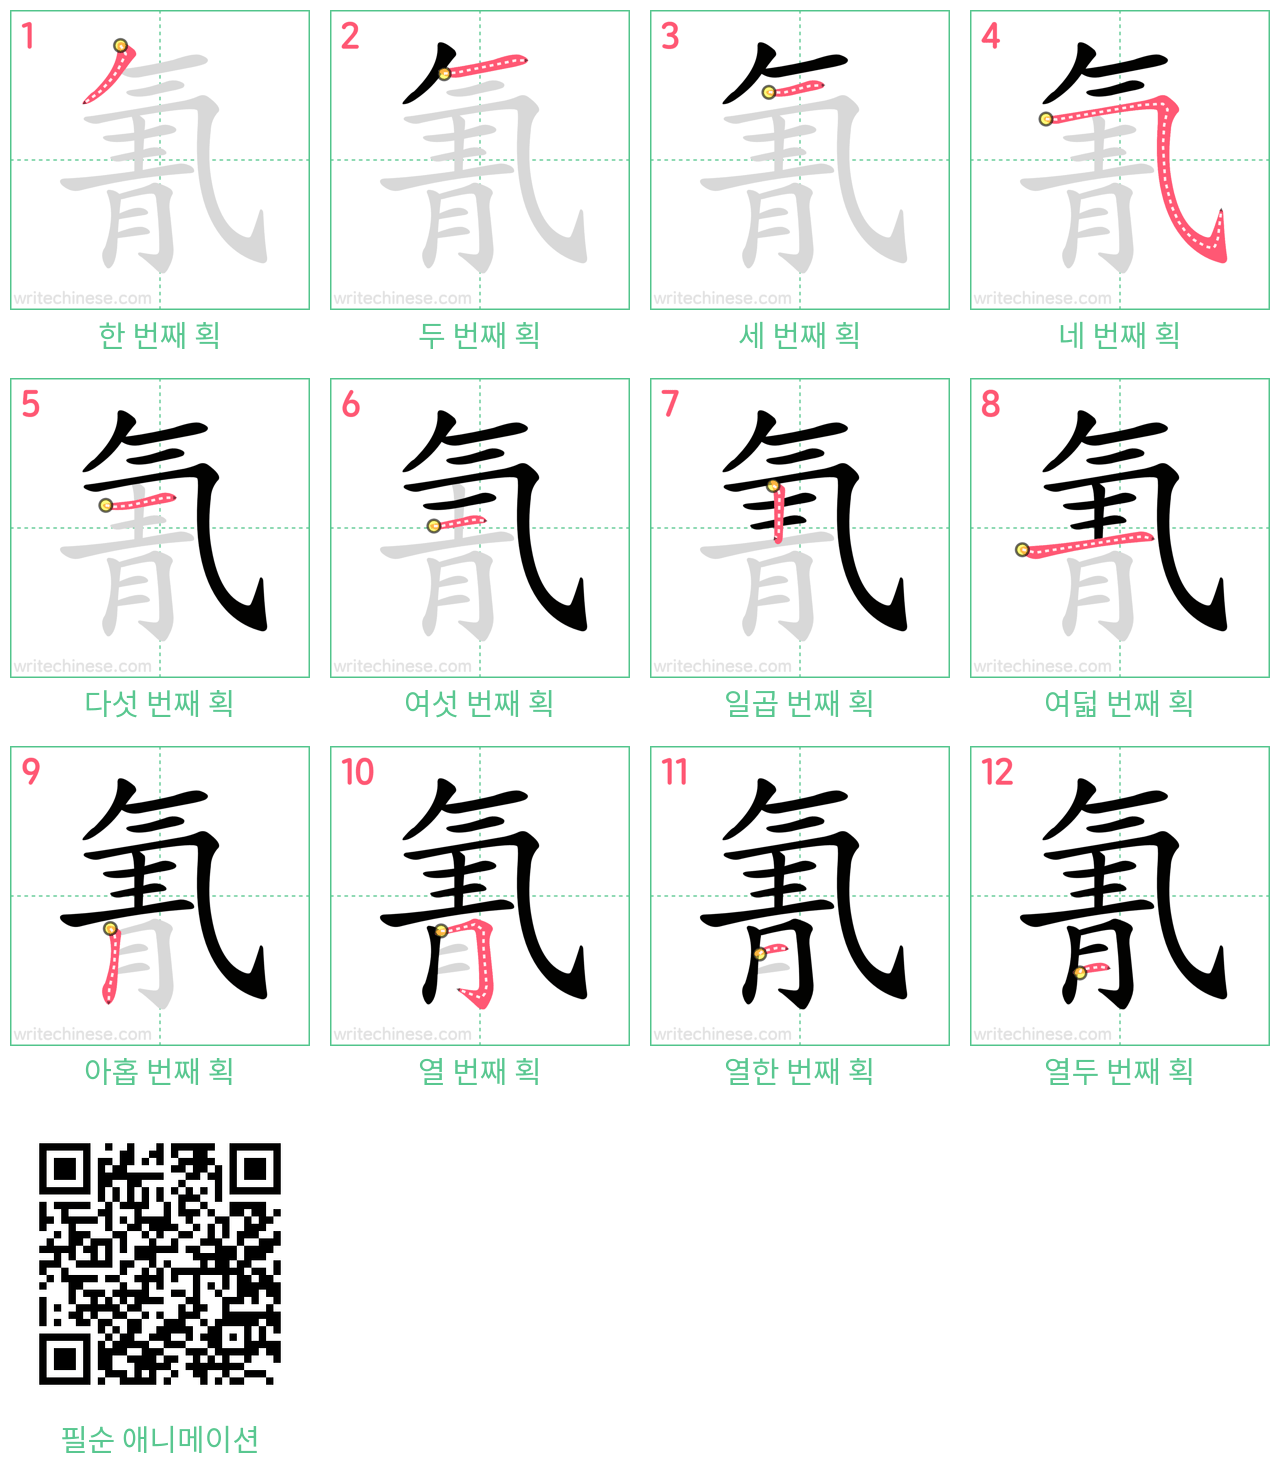 氰 step-by-step stroke order diagrams